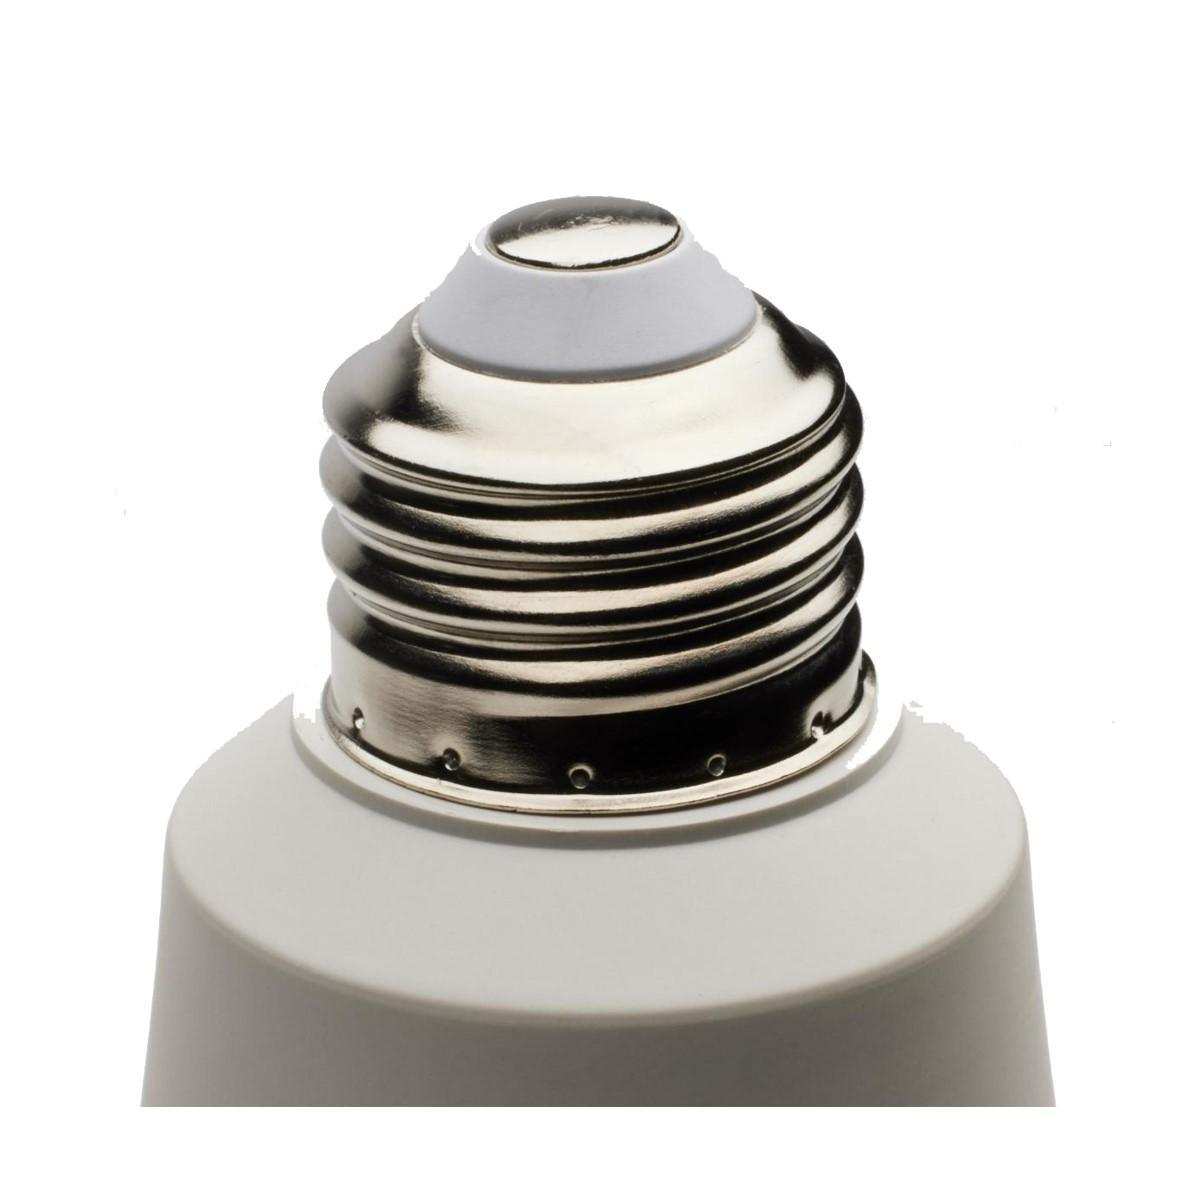 PS30 Bulged Tube LED Bulb, 36 Watt, 4500 Lumens, 5000K, E26 Medium Base, Dimmable - Bees Lighting